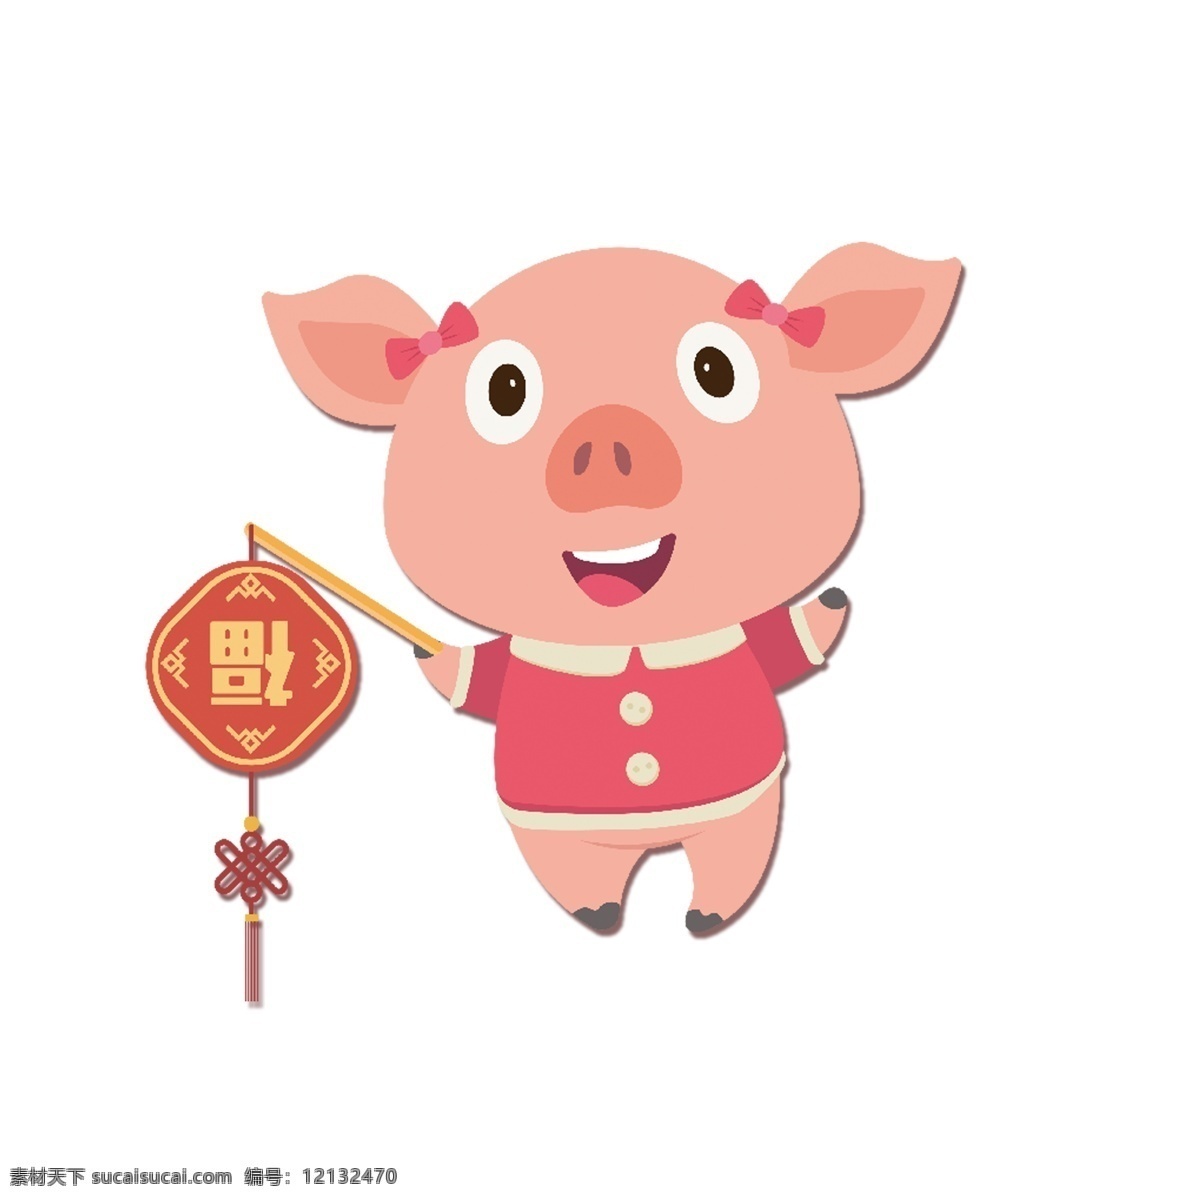 提 福字 灯笼 小 猪 新年 元素 中国结 设计元素 创意 春节 小猪 手绘图案 猪年 春节元素 中国新年元素 新年喜庆元素 现代新年元素 新年元素设计